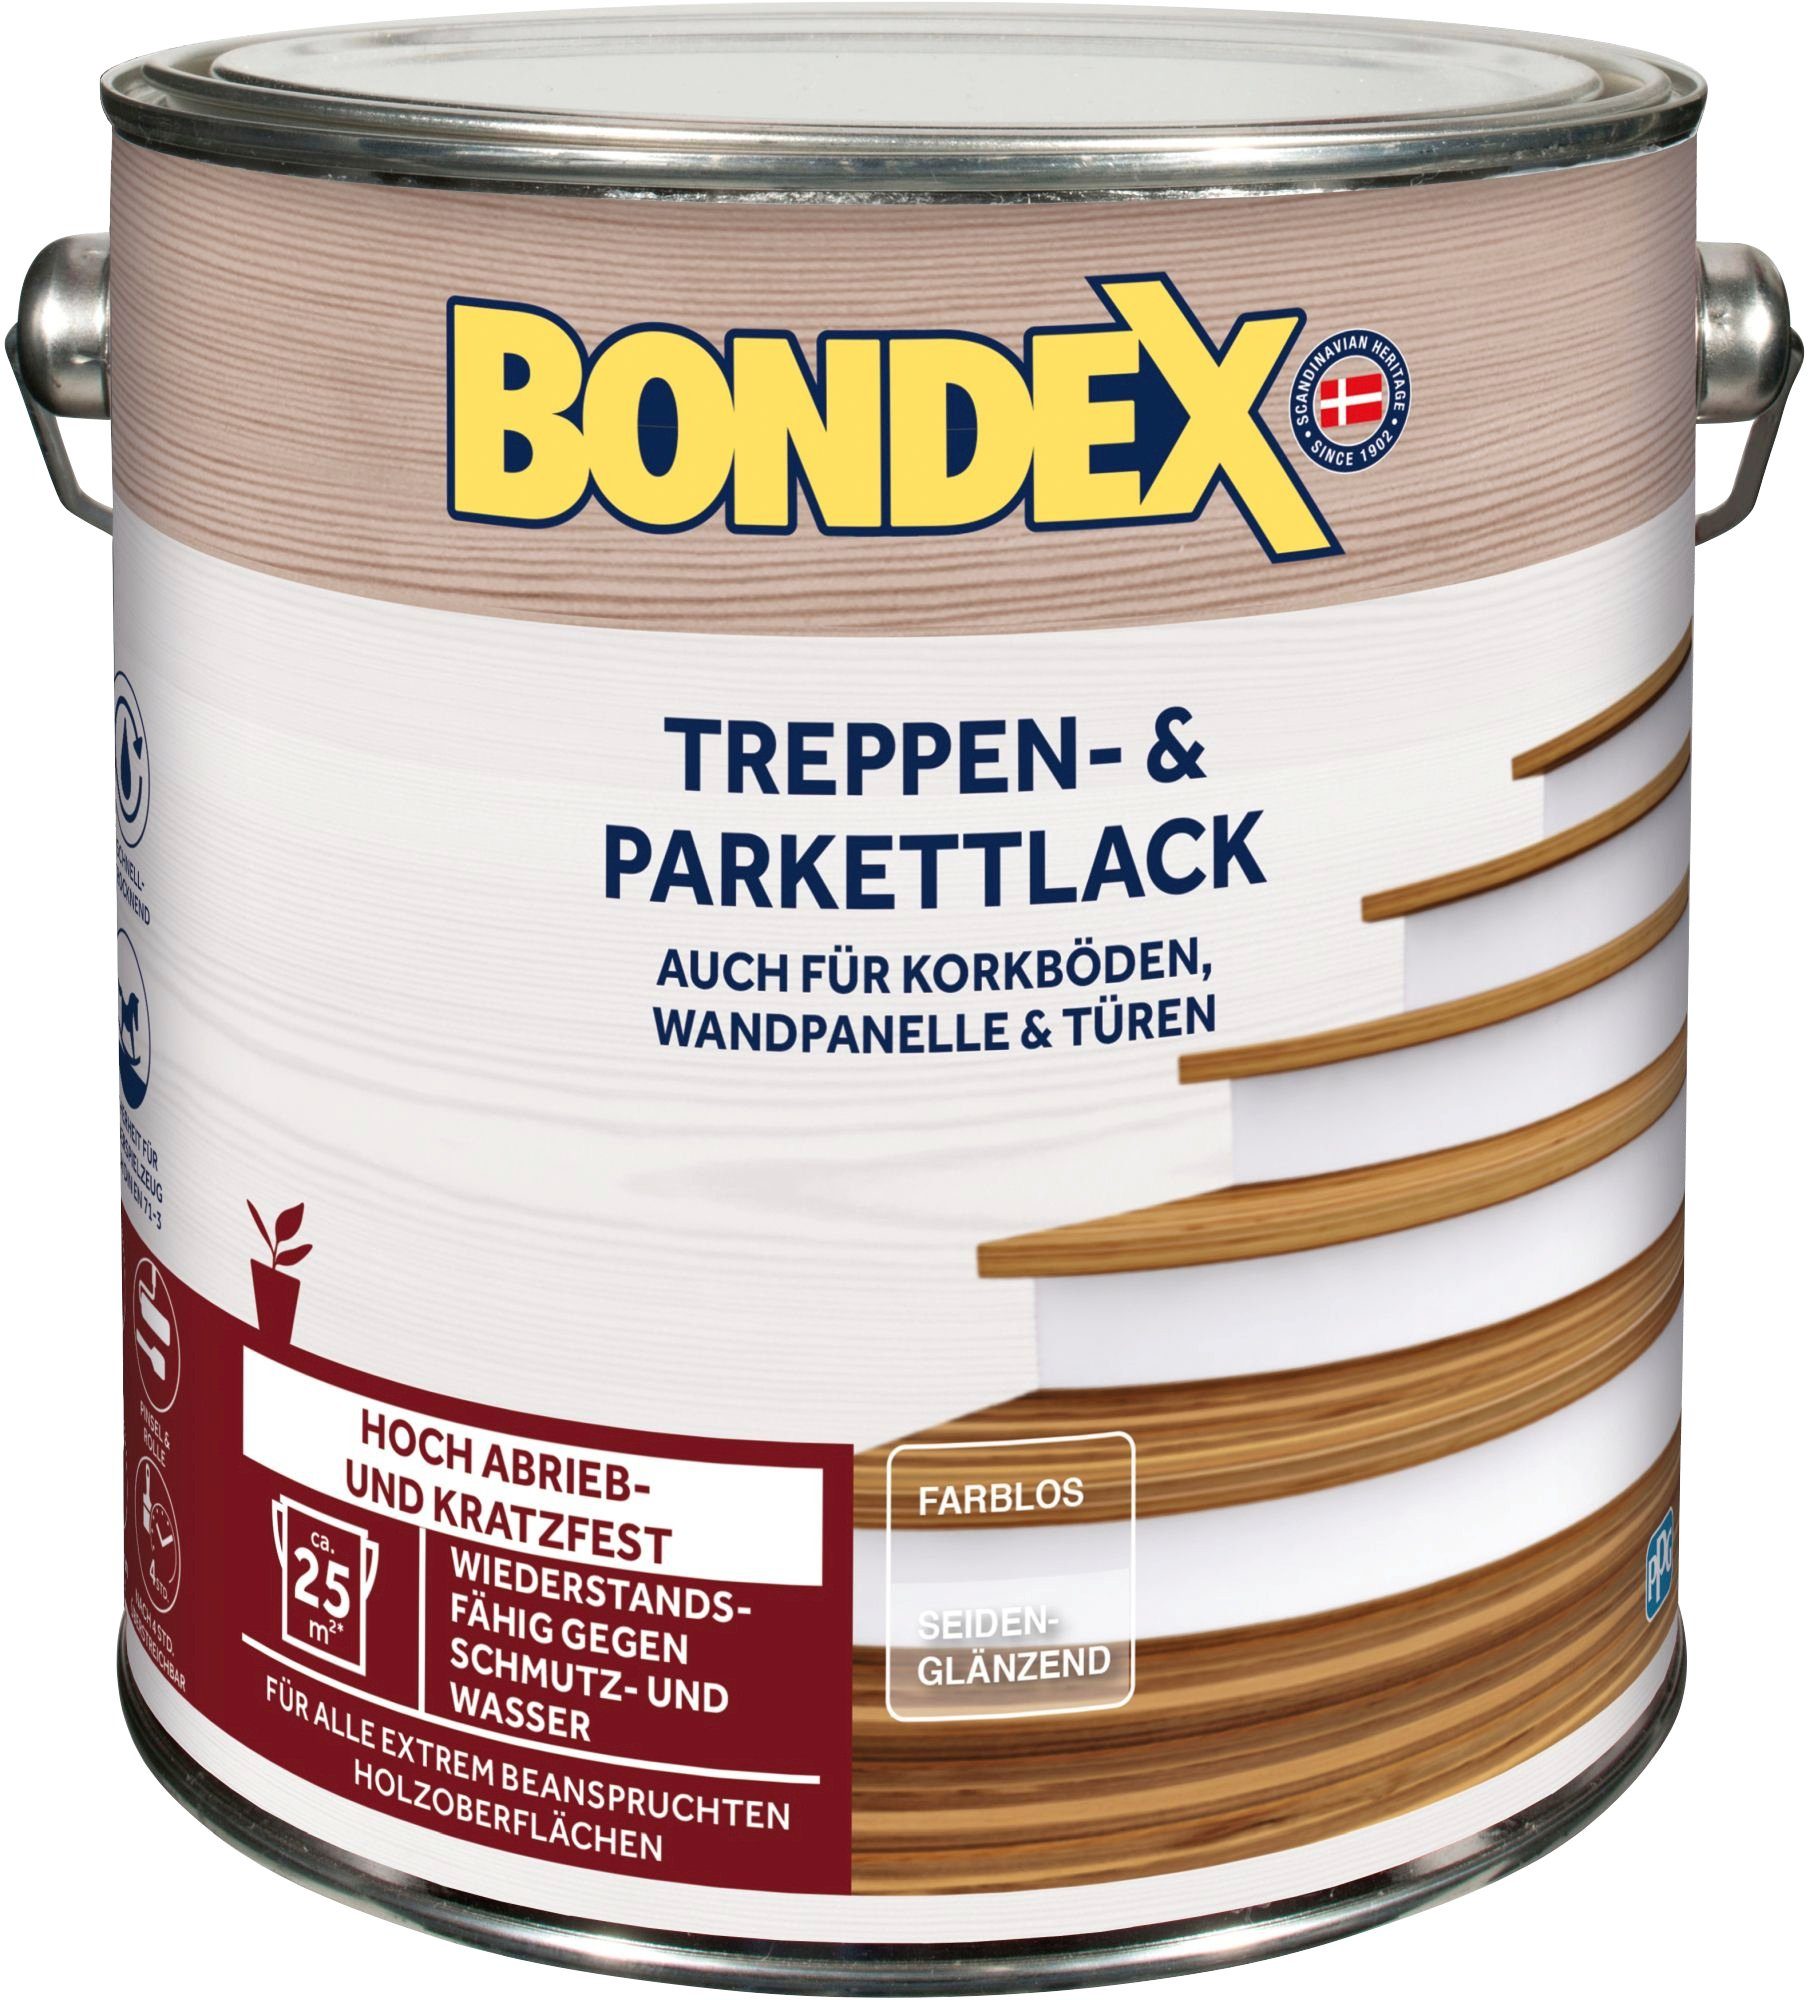 Bondex Parkettlack TREPPEN- kratzfest Treppen- & PARKETTLACK, seidenglänzend, farblos und hoch & abrieb-